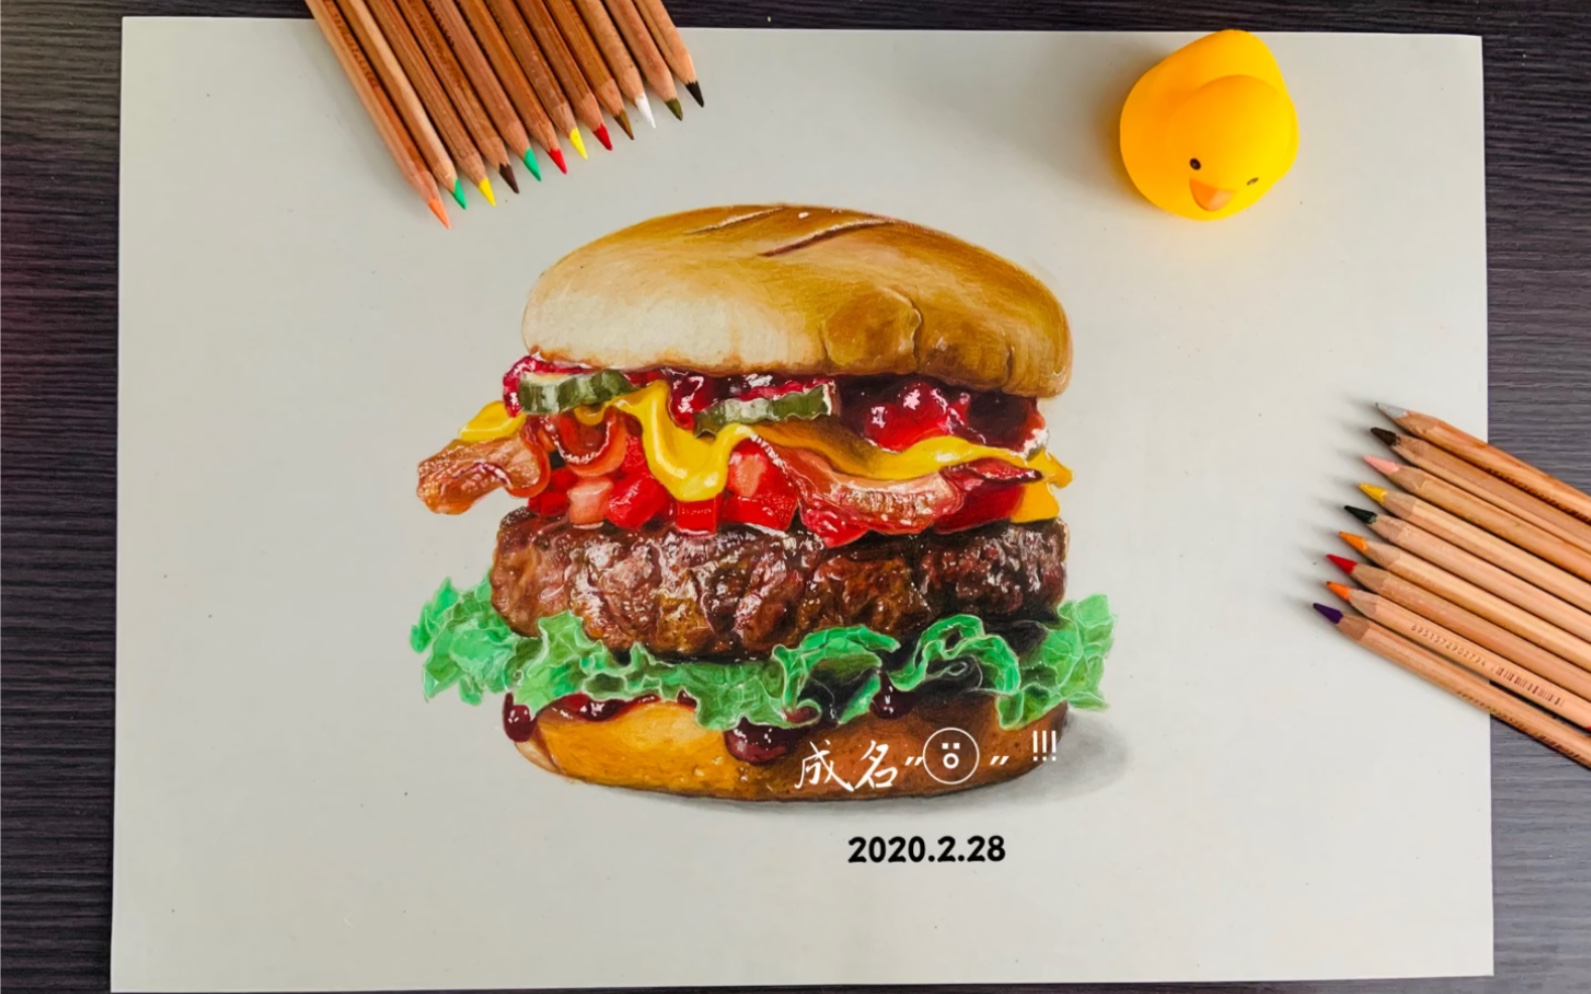 汉堡怎么画,100种食物简笔画 - 伤感说说吧